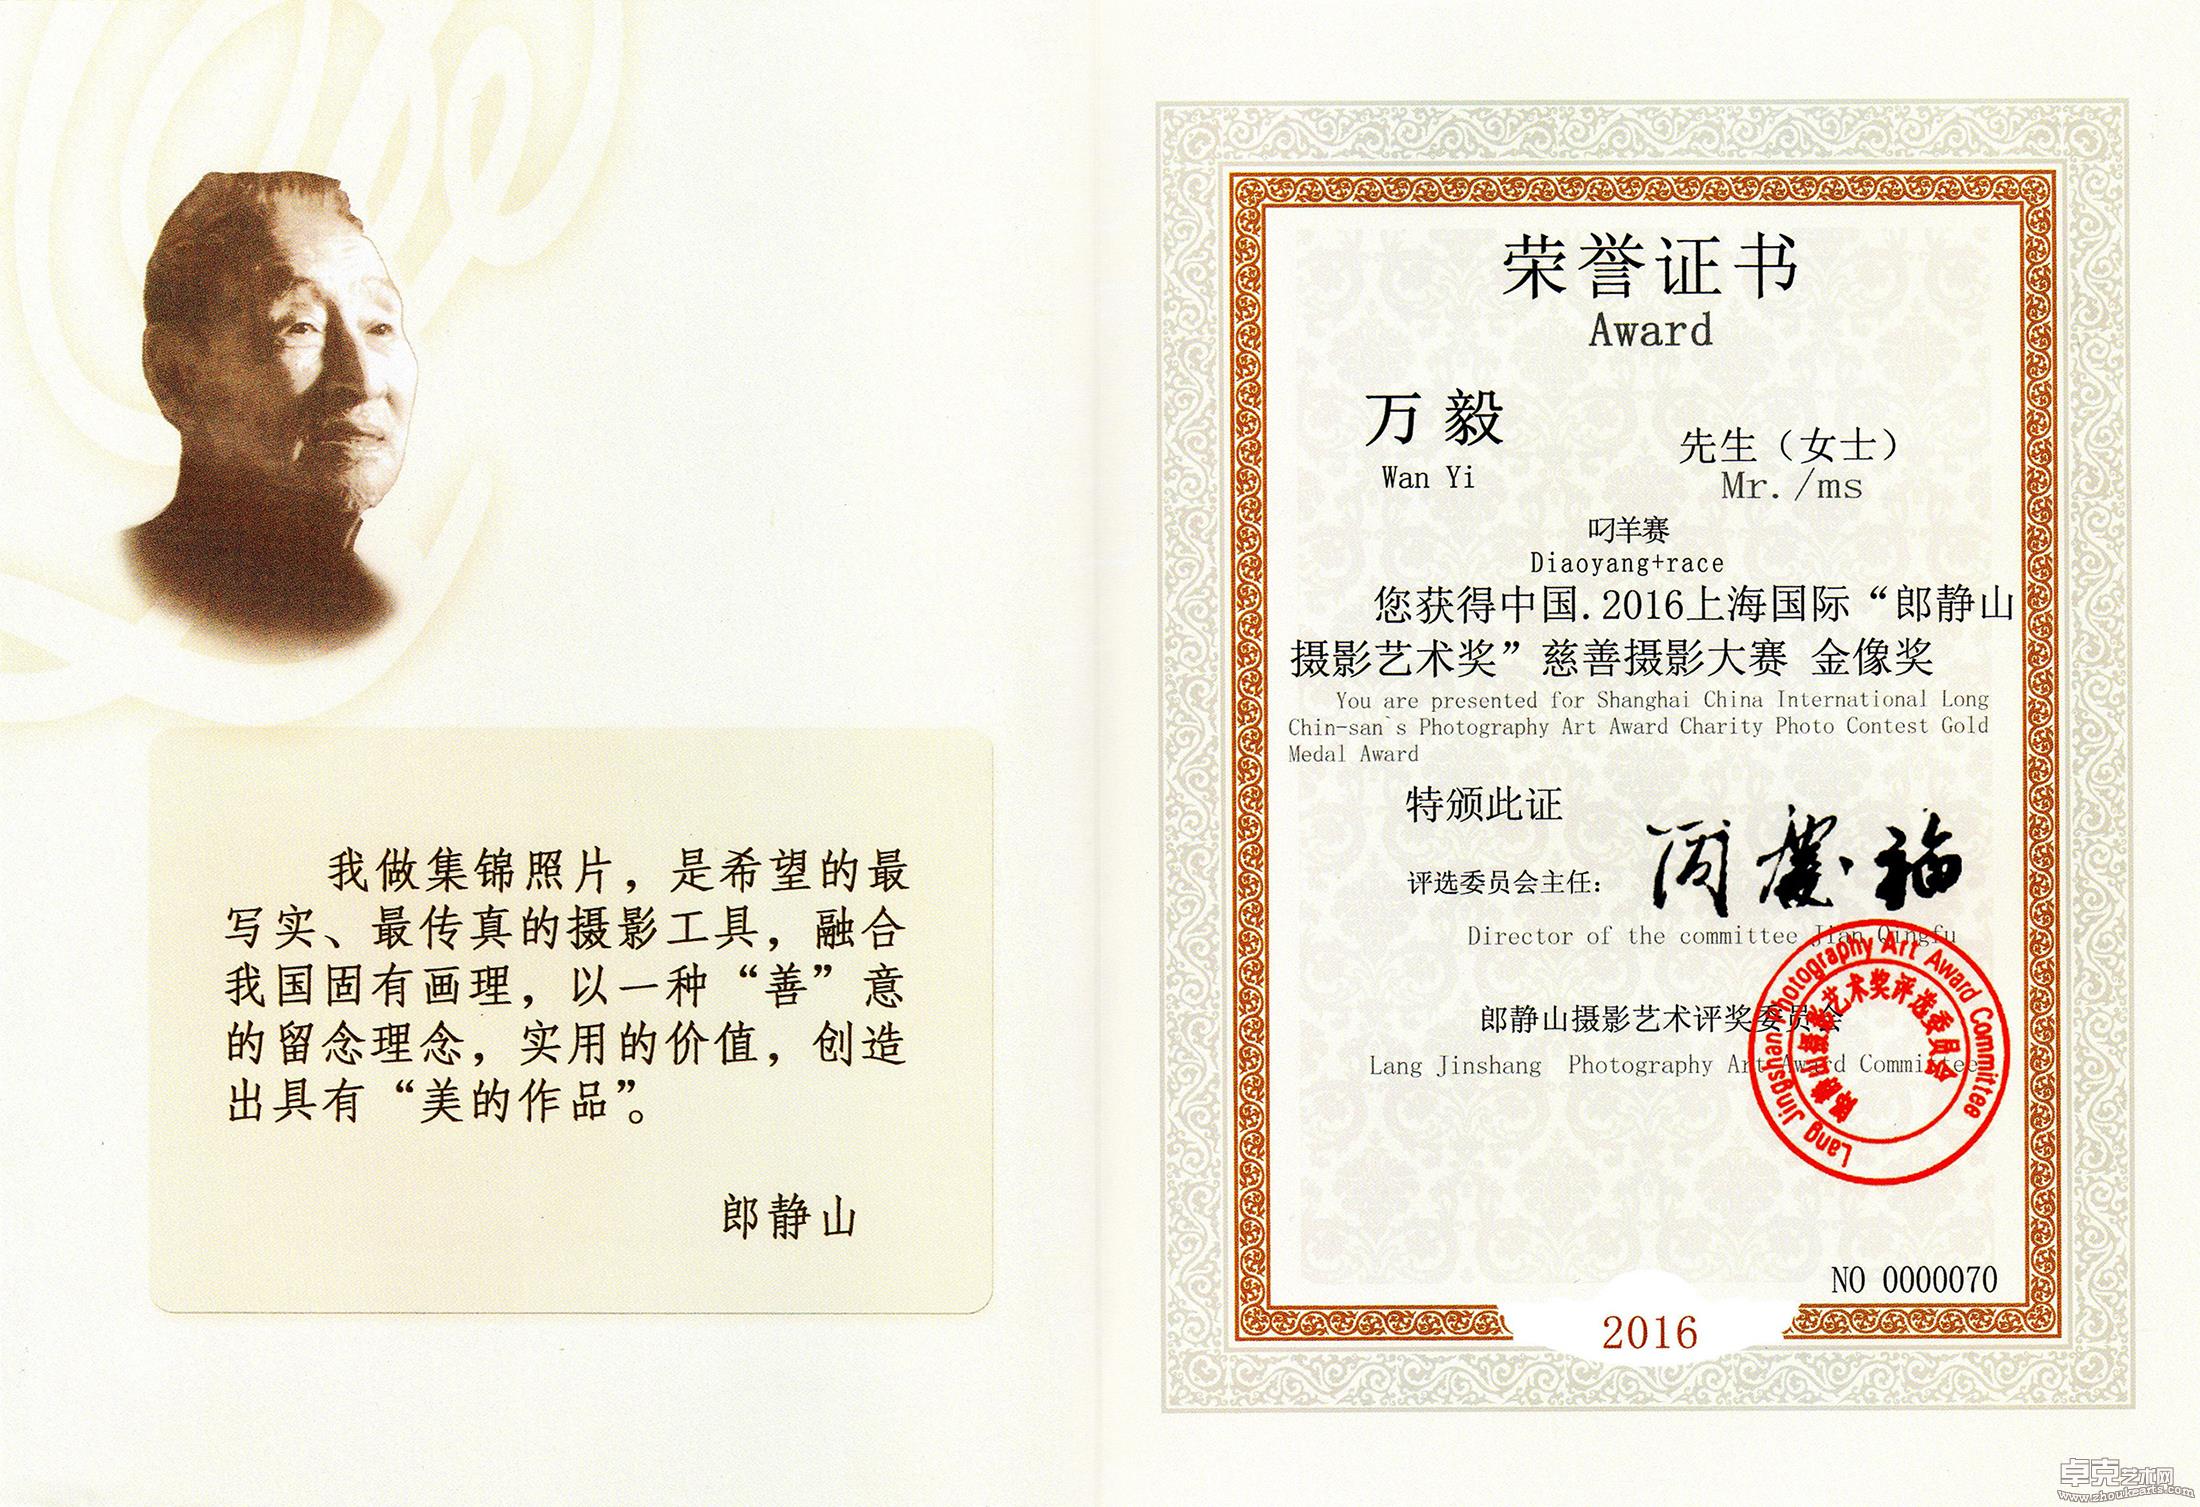 2016年上海国际“郎静山摄影艺术奖”慈善摄影大赛金像奖荣誉证书